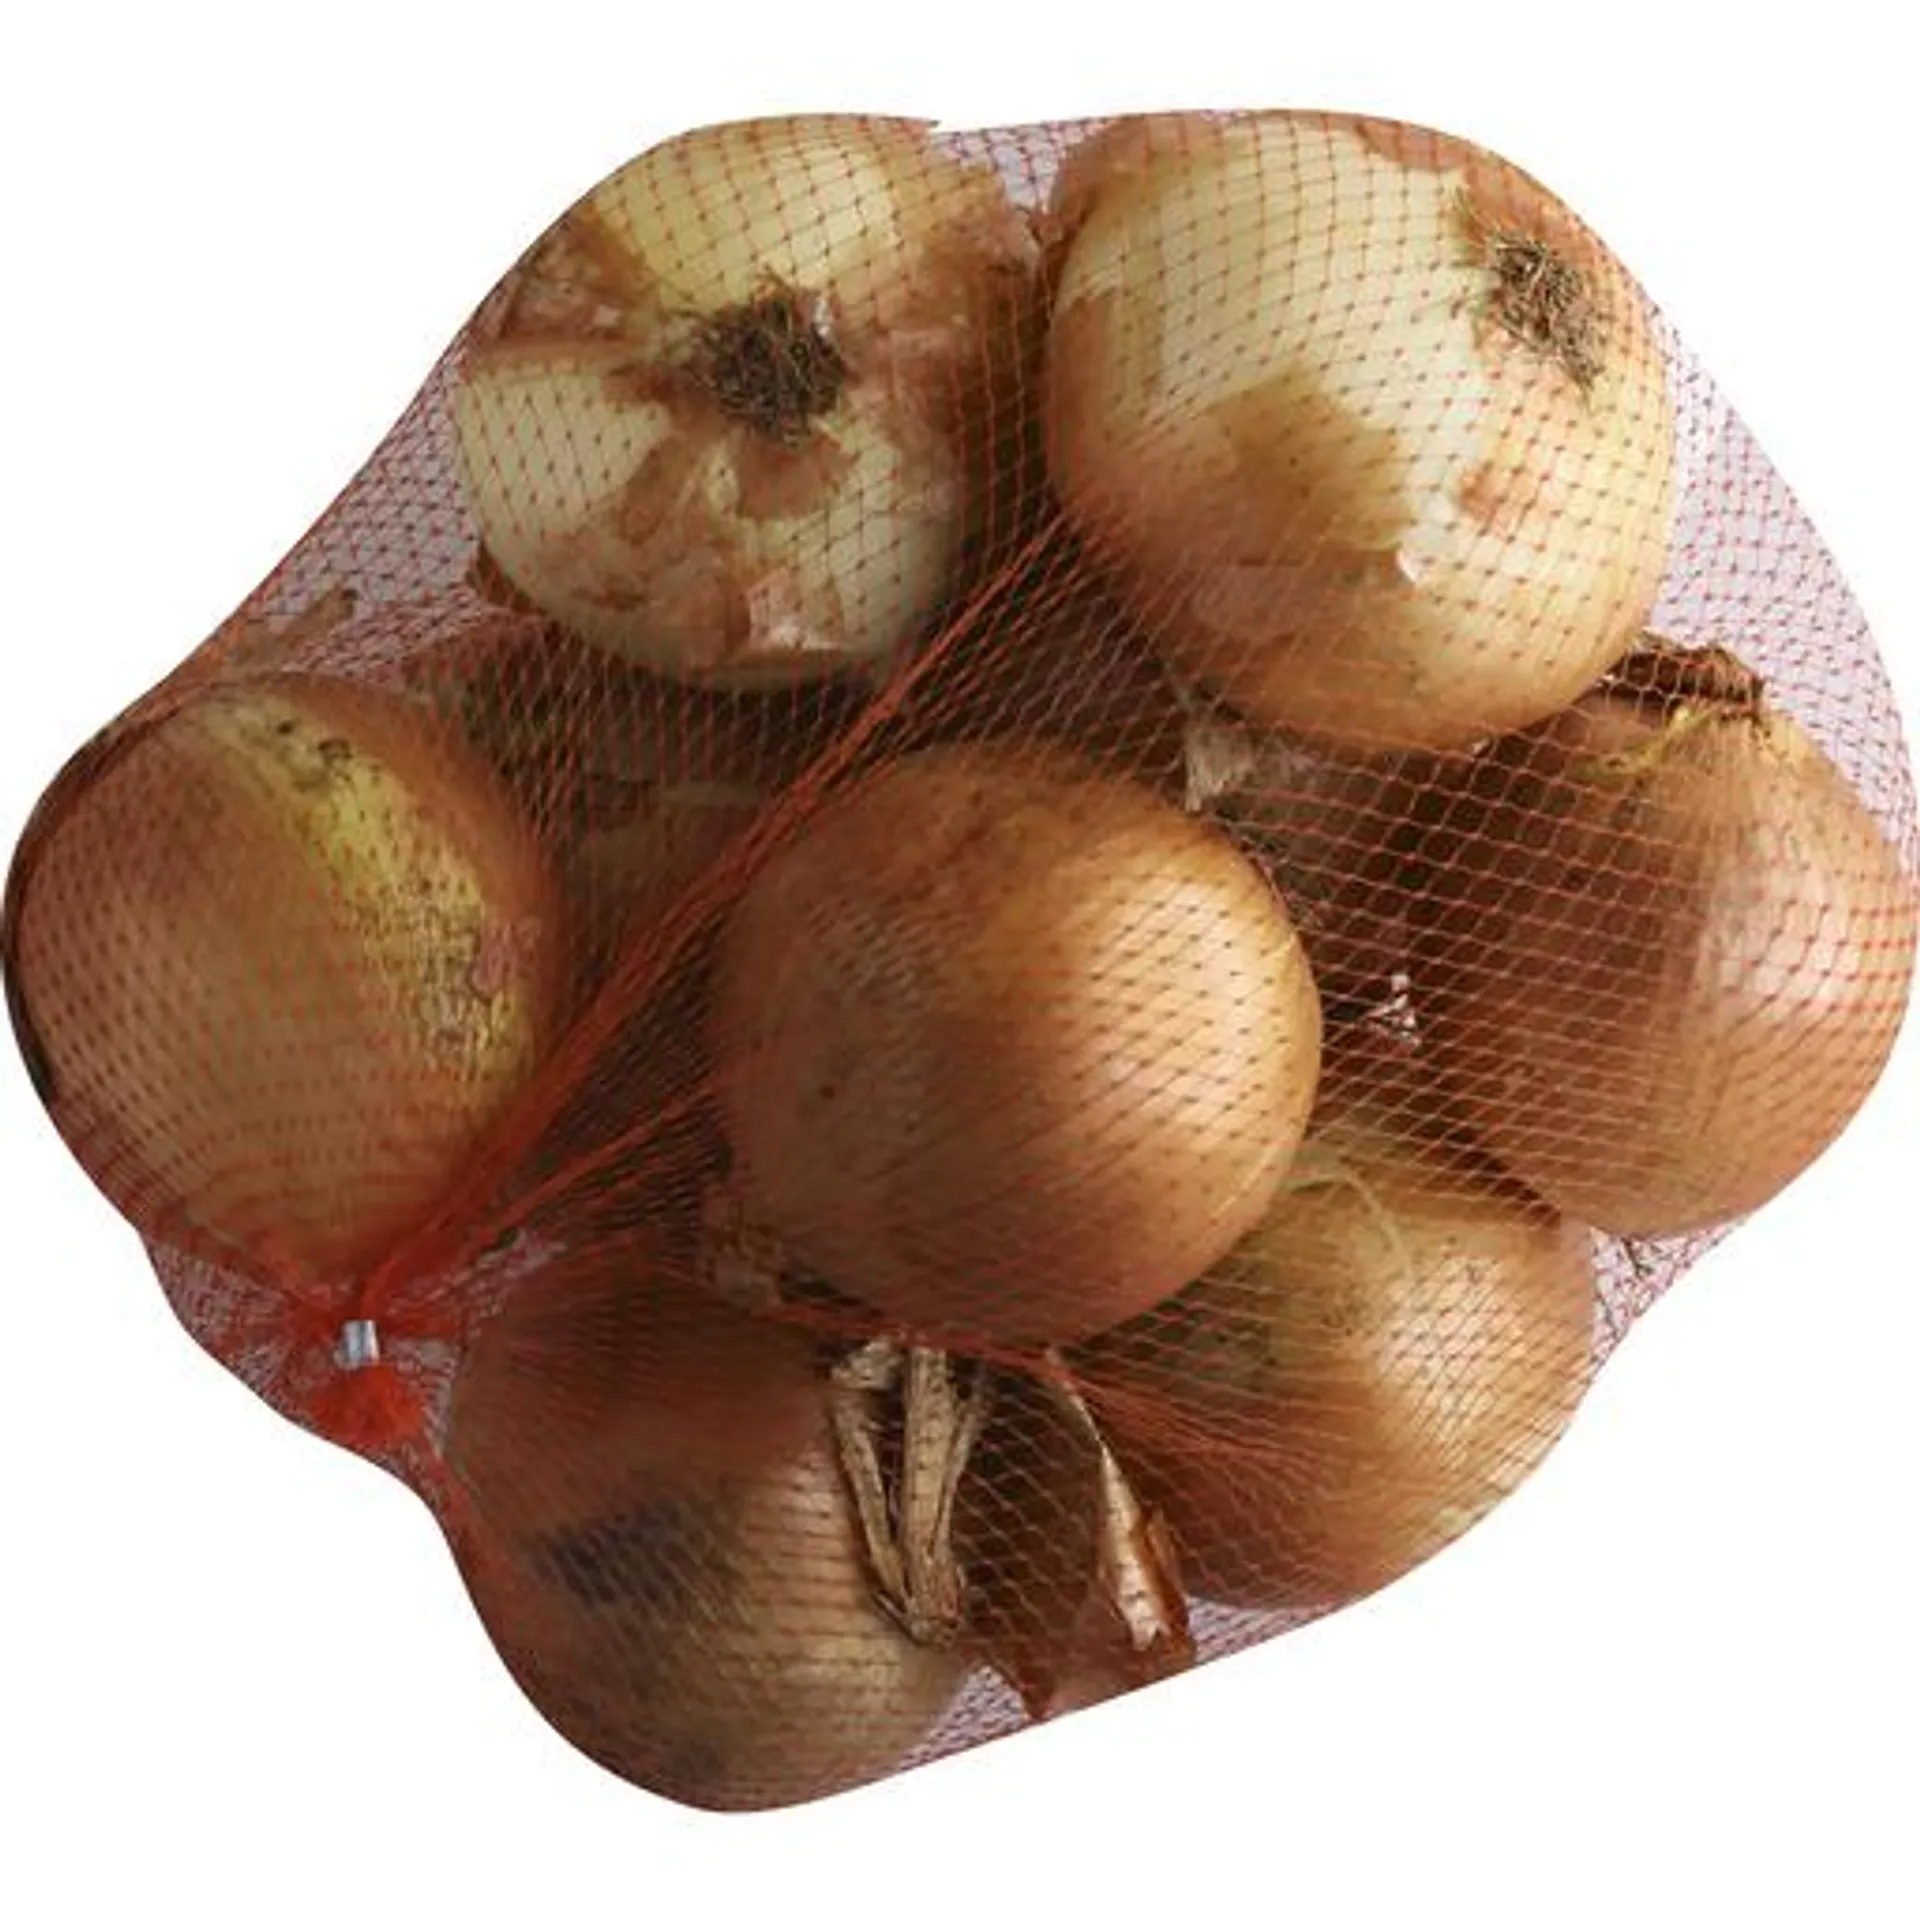 Fresh From The Start Premium Yellow Onions